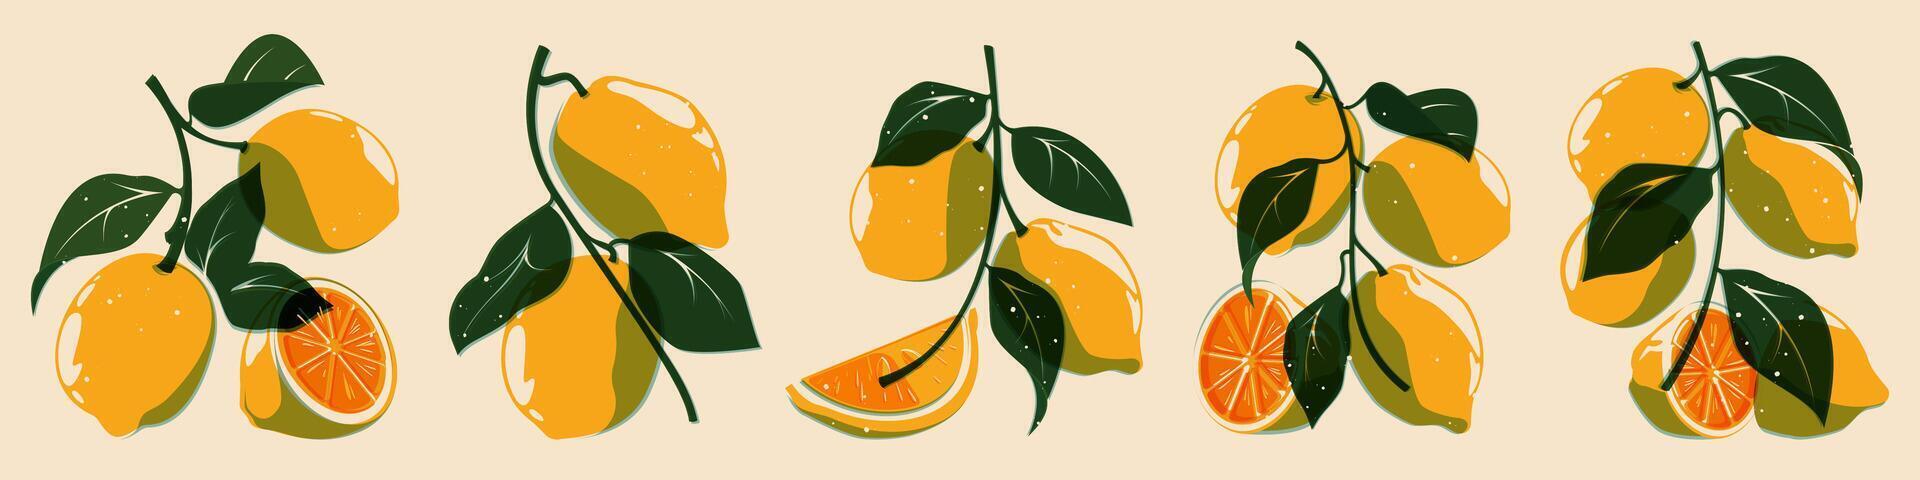 citron plante ris collection. Frais agrumes fruit pour biologique éco conception, dessin animé botanique impression éléments de citron arbre. vecteur isolé ensemble